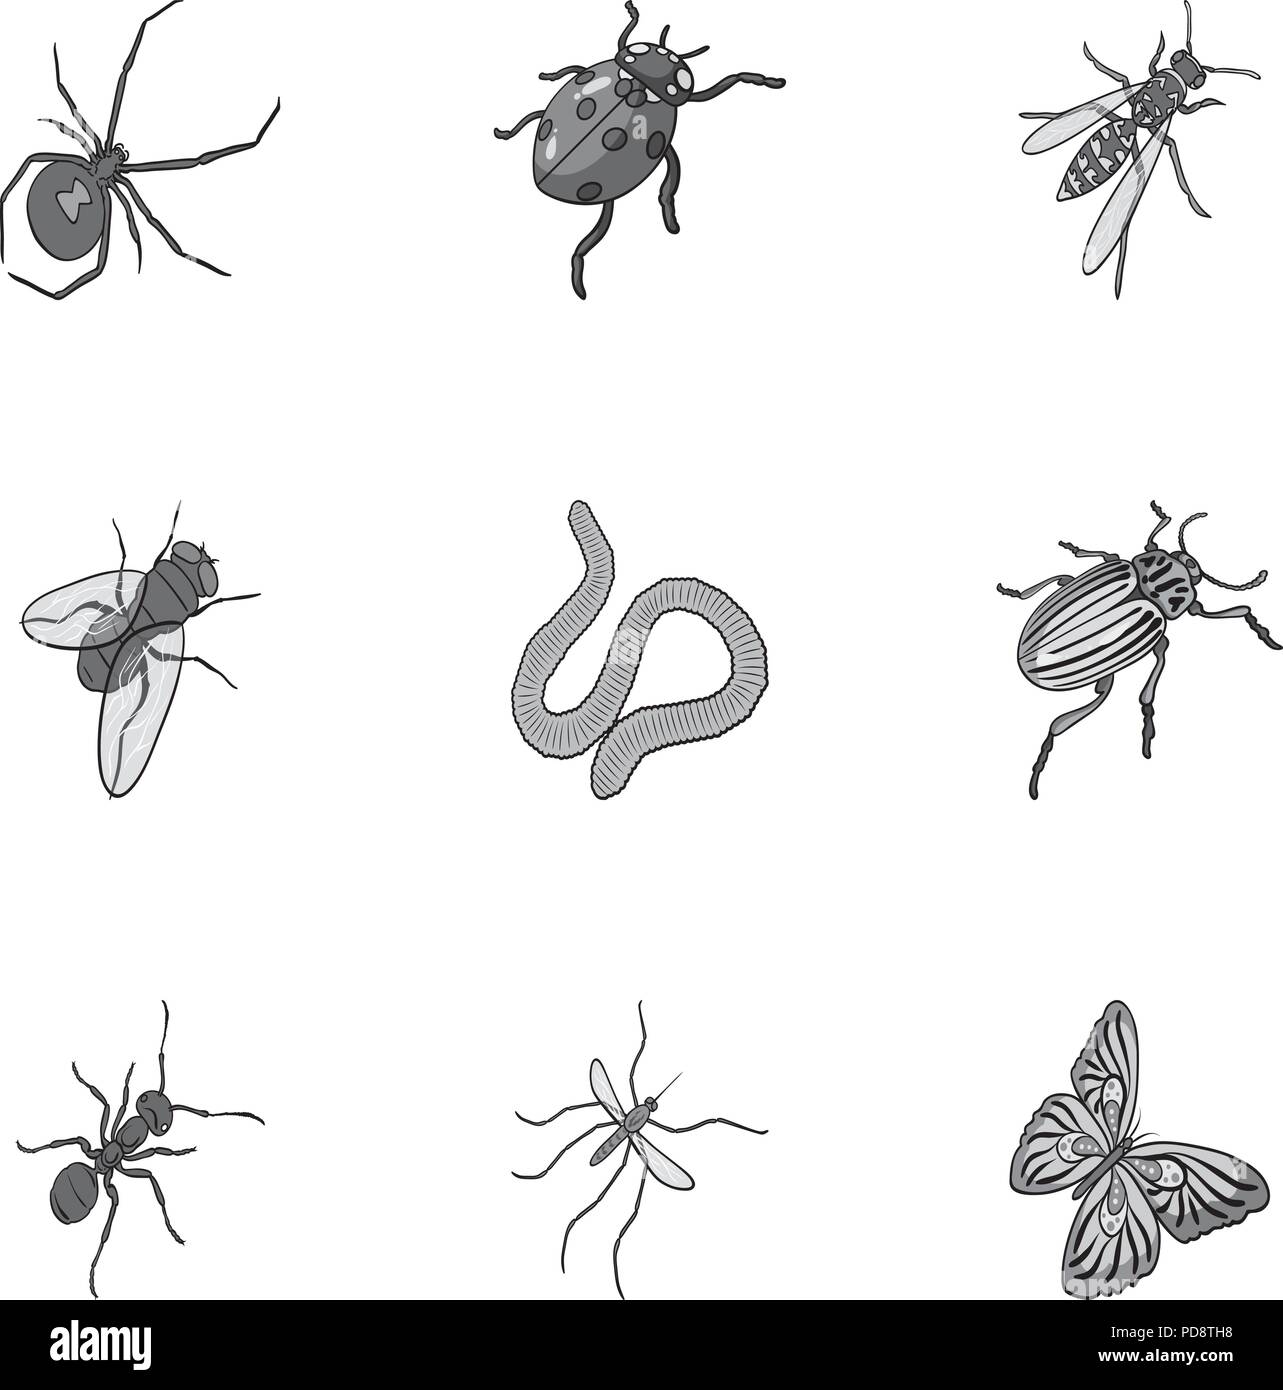 Käfer, Wespen, Bienen, Ameisen, Fliegen, Spinnen, Mücken und andere  Insekten. Verschiedene Insekten set Sammlung Icons in Schwarzweiß-Stil  Vektor symbol Lager i Stock-Vektorgrafik - Alamy